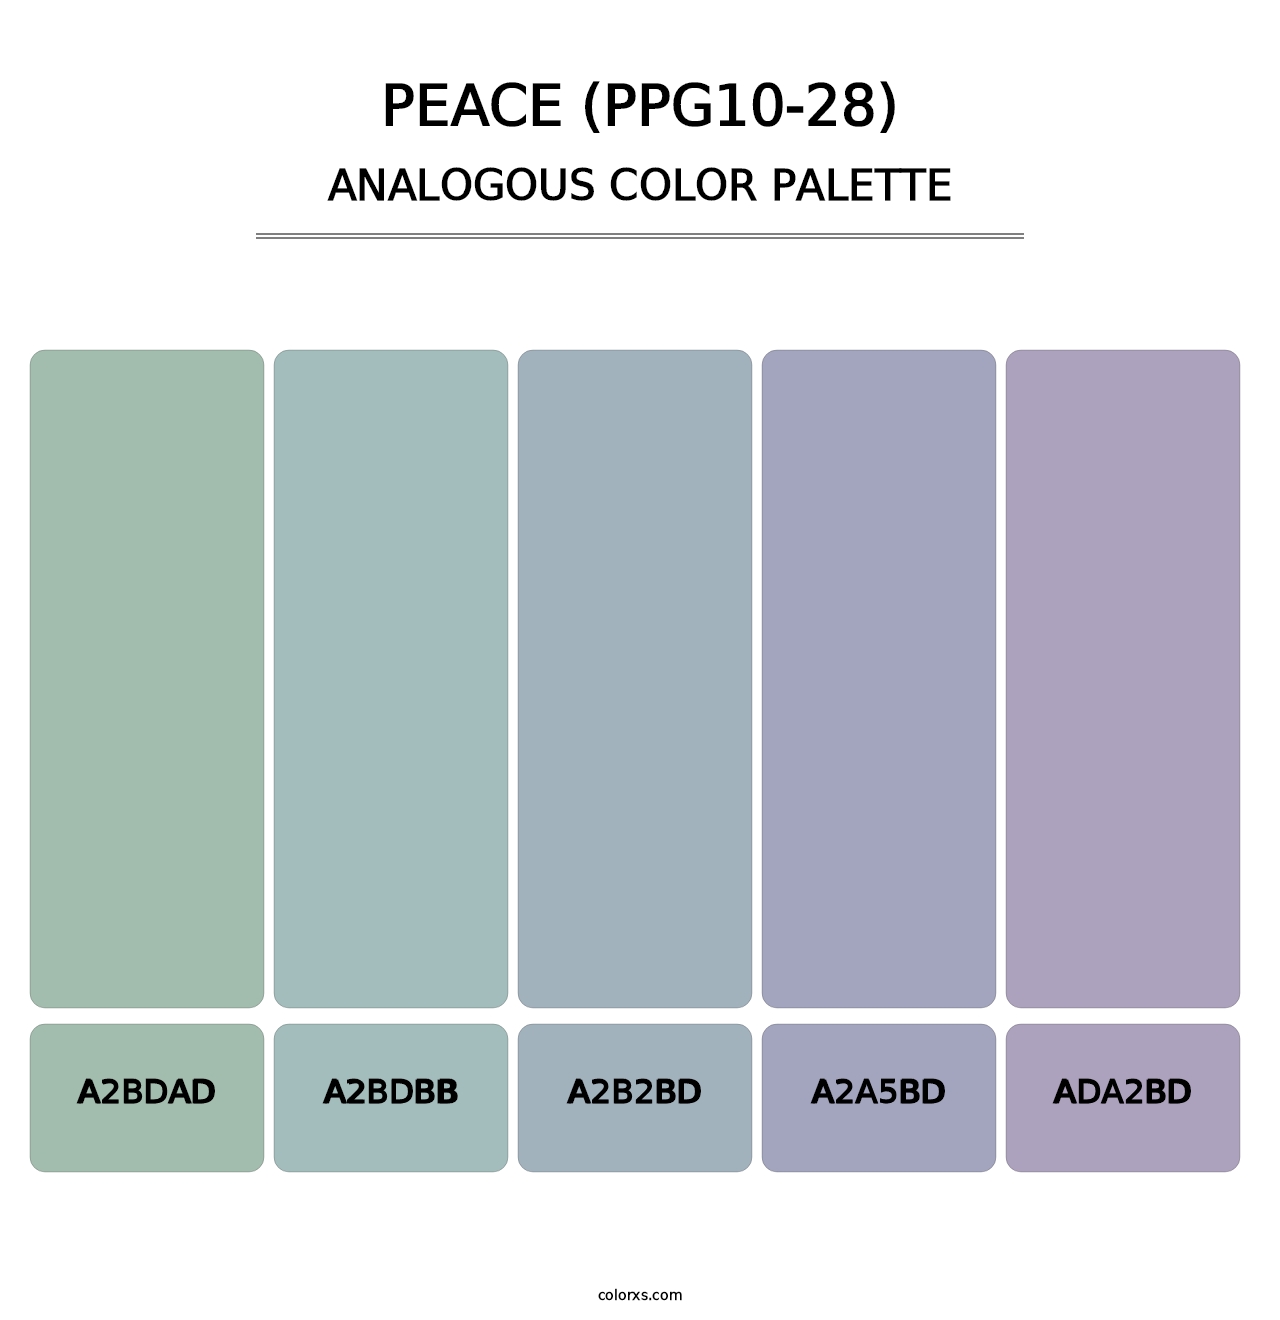 Peace (PPG10-28) - Analogous Color Palette